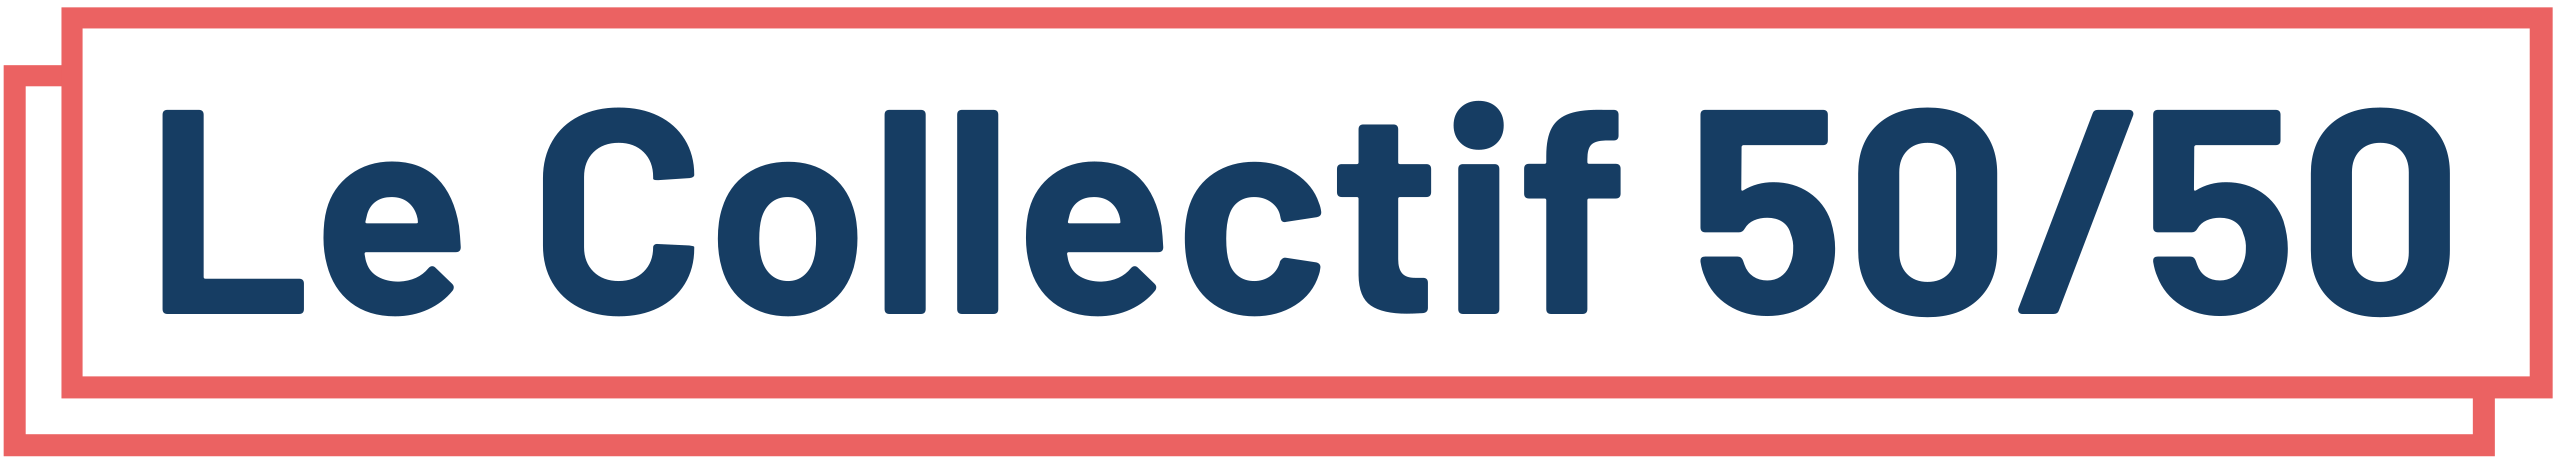 Collectif 50/50 logo